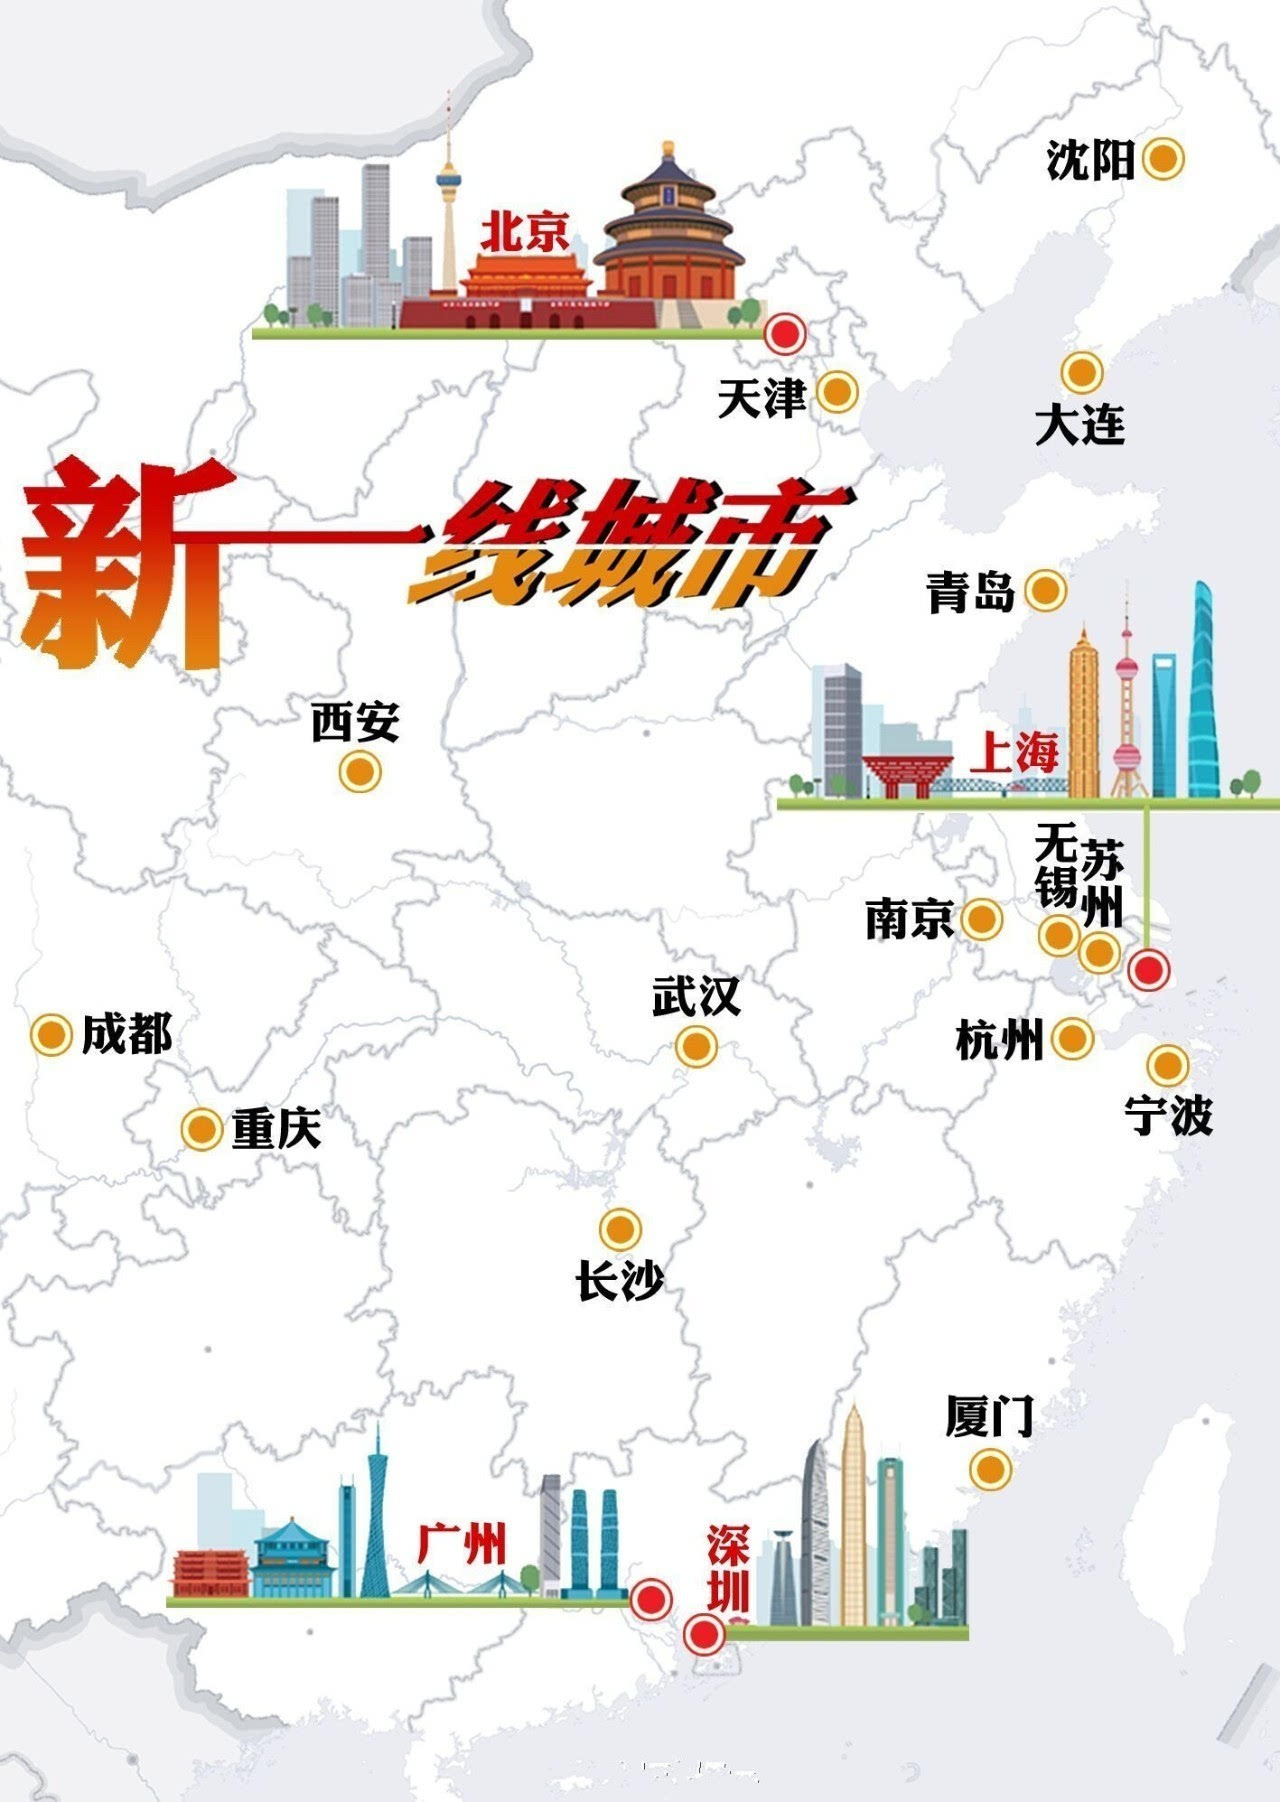 南京市区有多少人口_2019...一出地铁看最高的建筑就是它 晚上登上他看夜景超